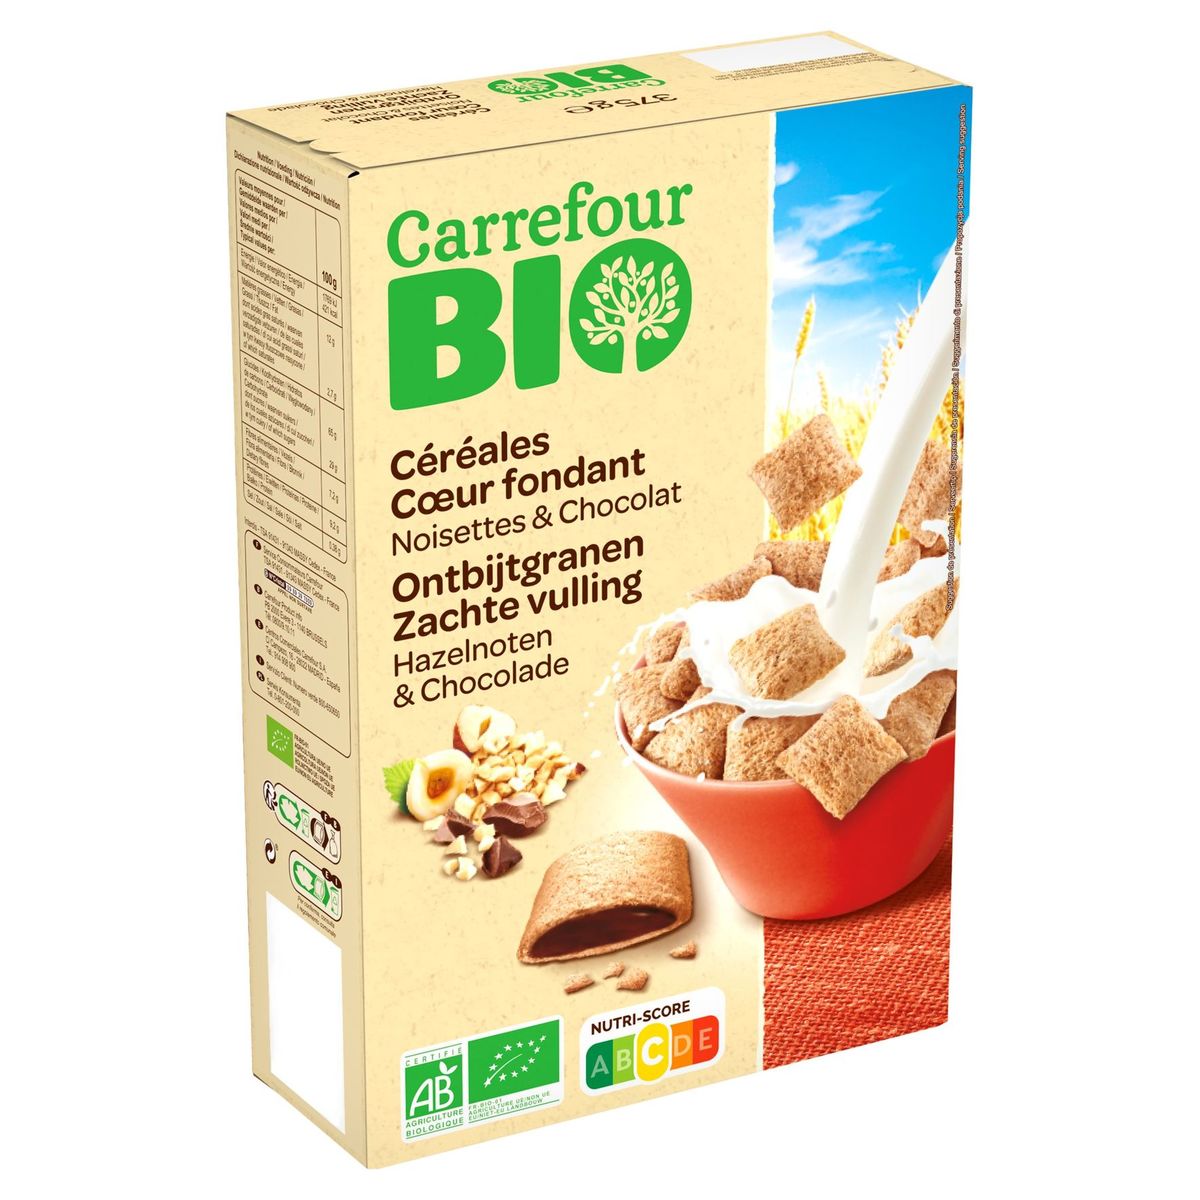 Carrefour Bio Céréales Cœur Fondant Noisettes & Chocolat 375 g